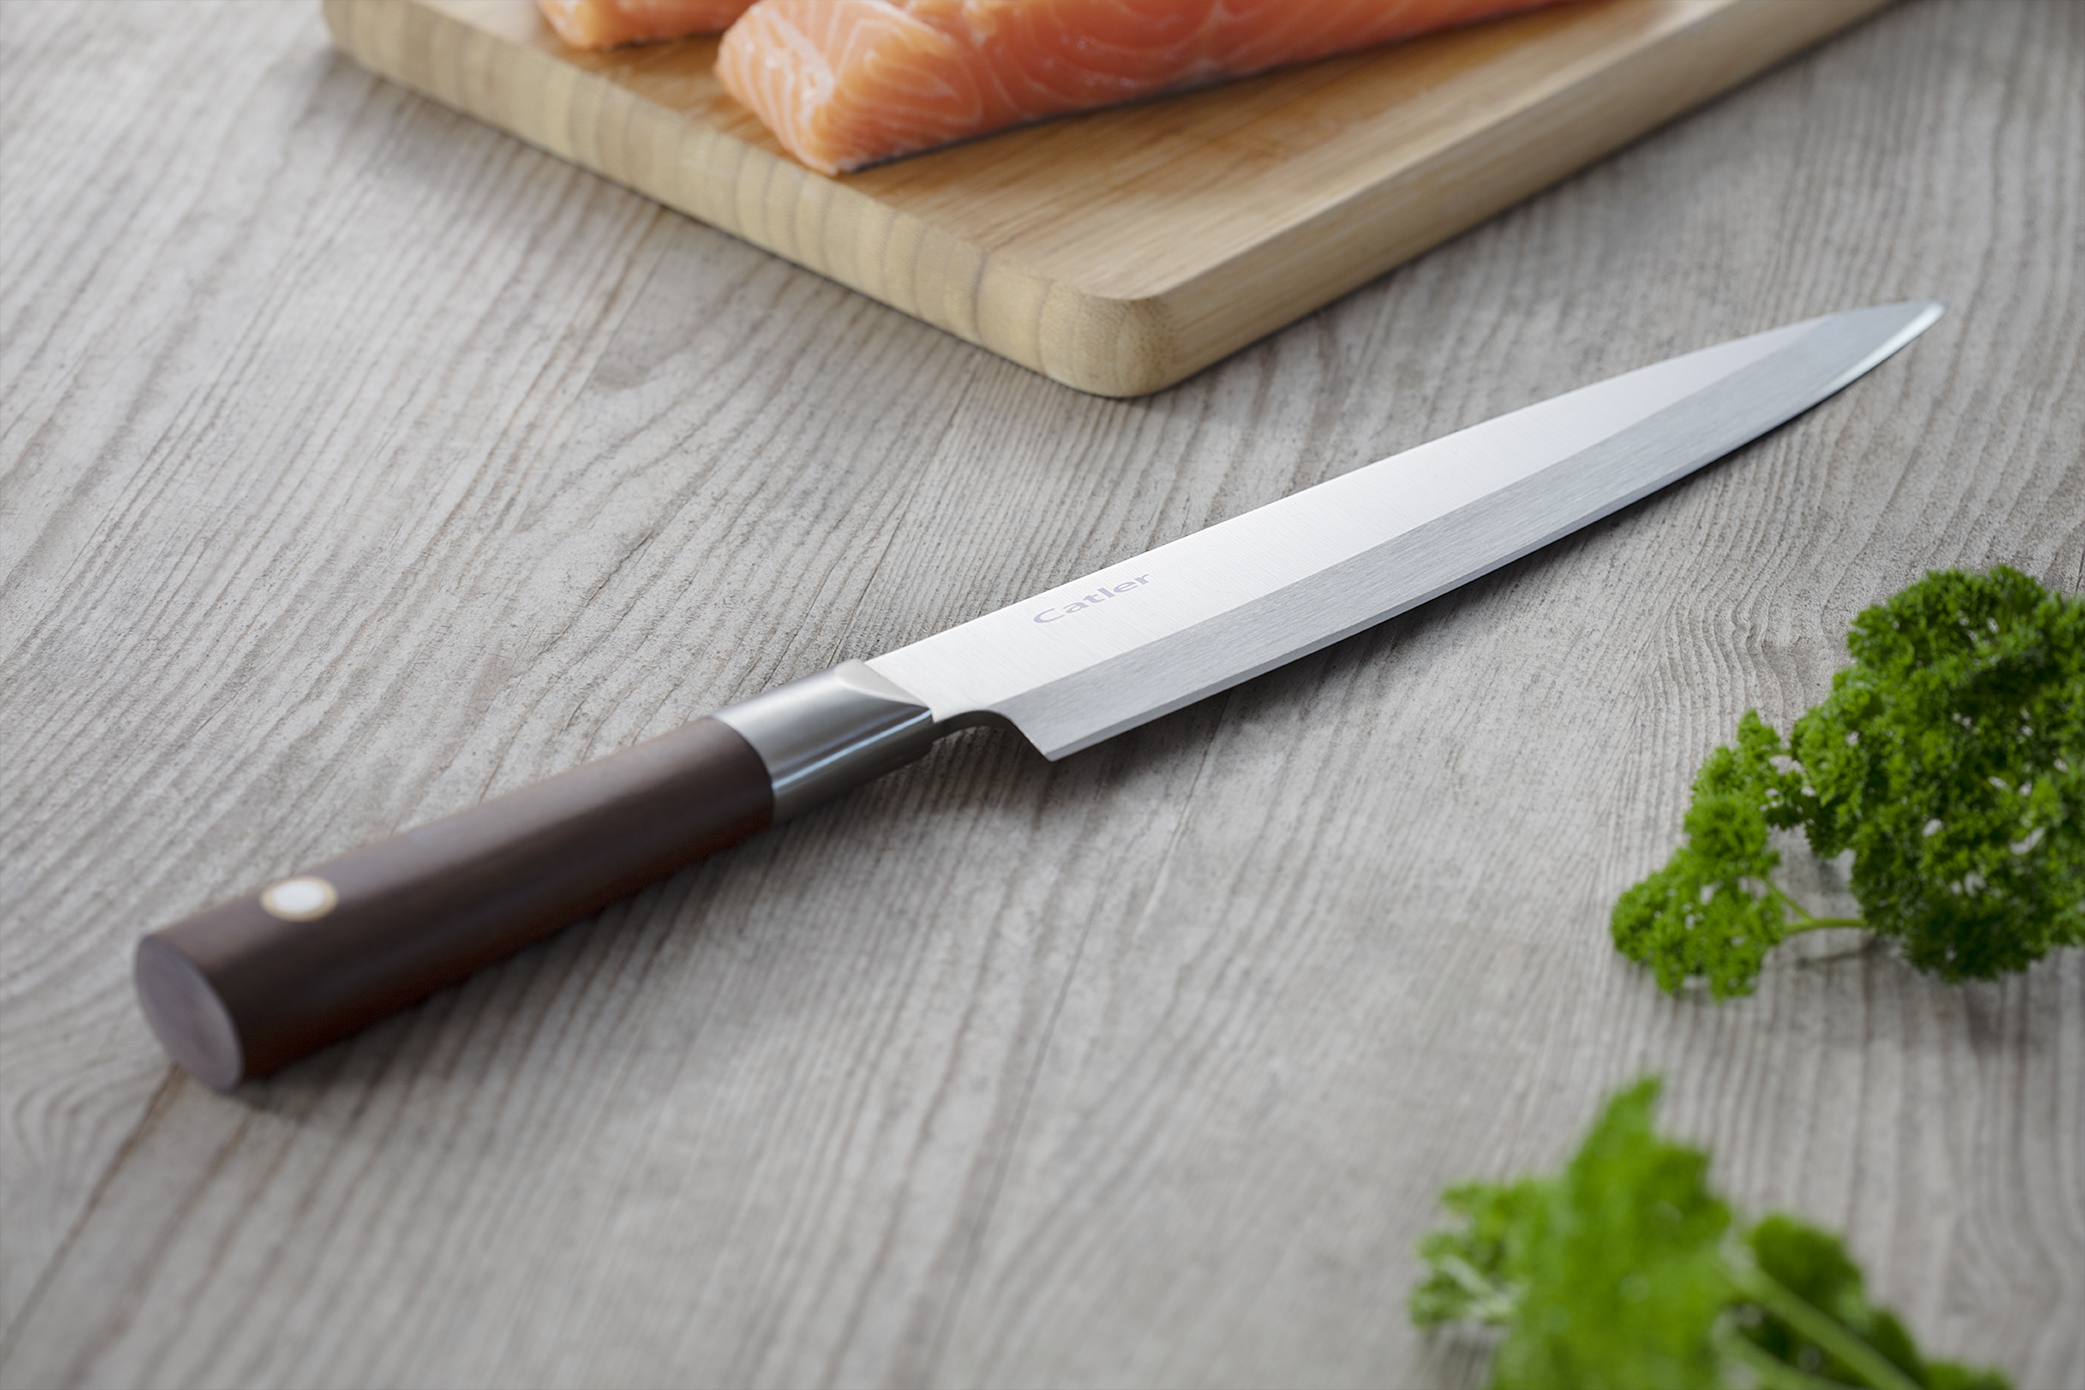 The Japanese Sashimi knife